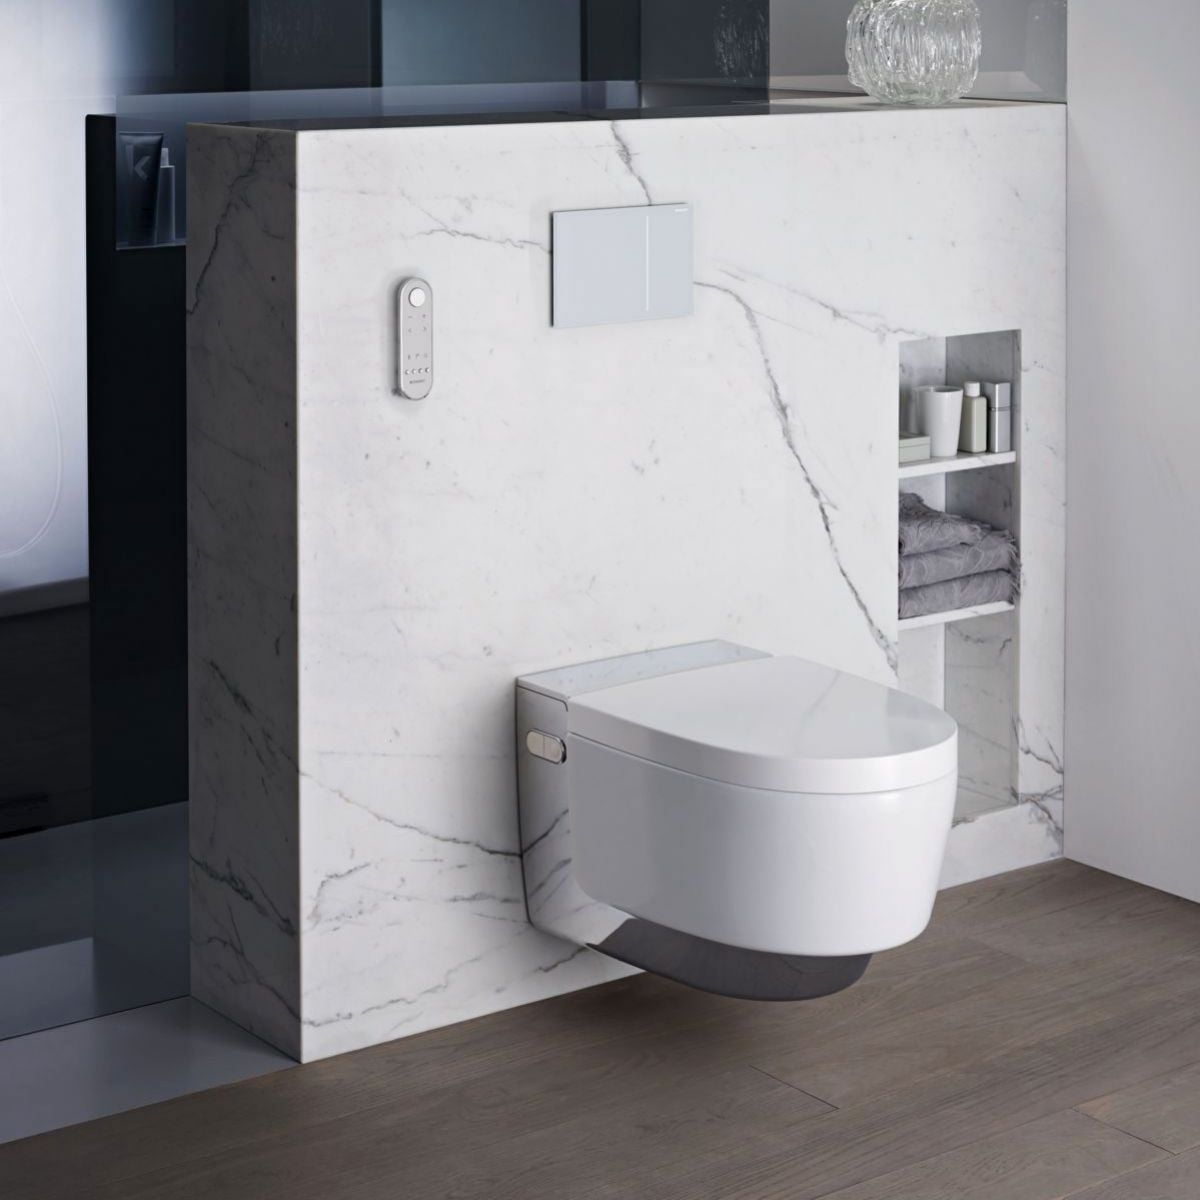 New Bathroom Trends In 2022: Smart toilets